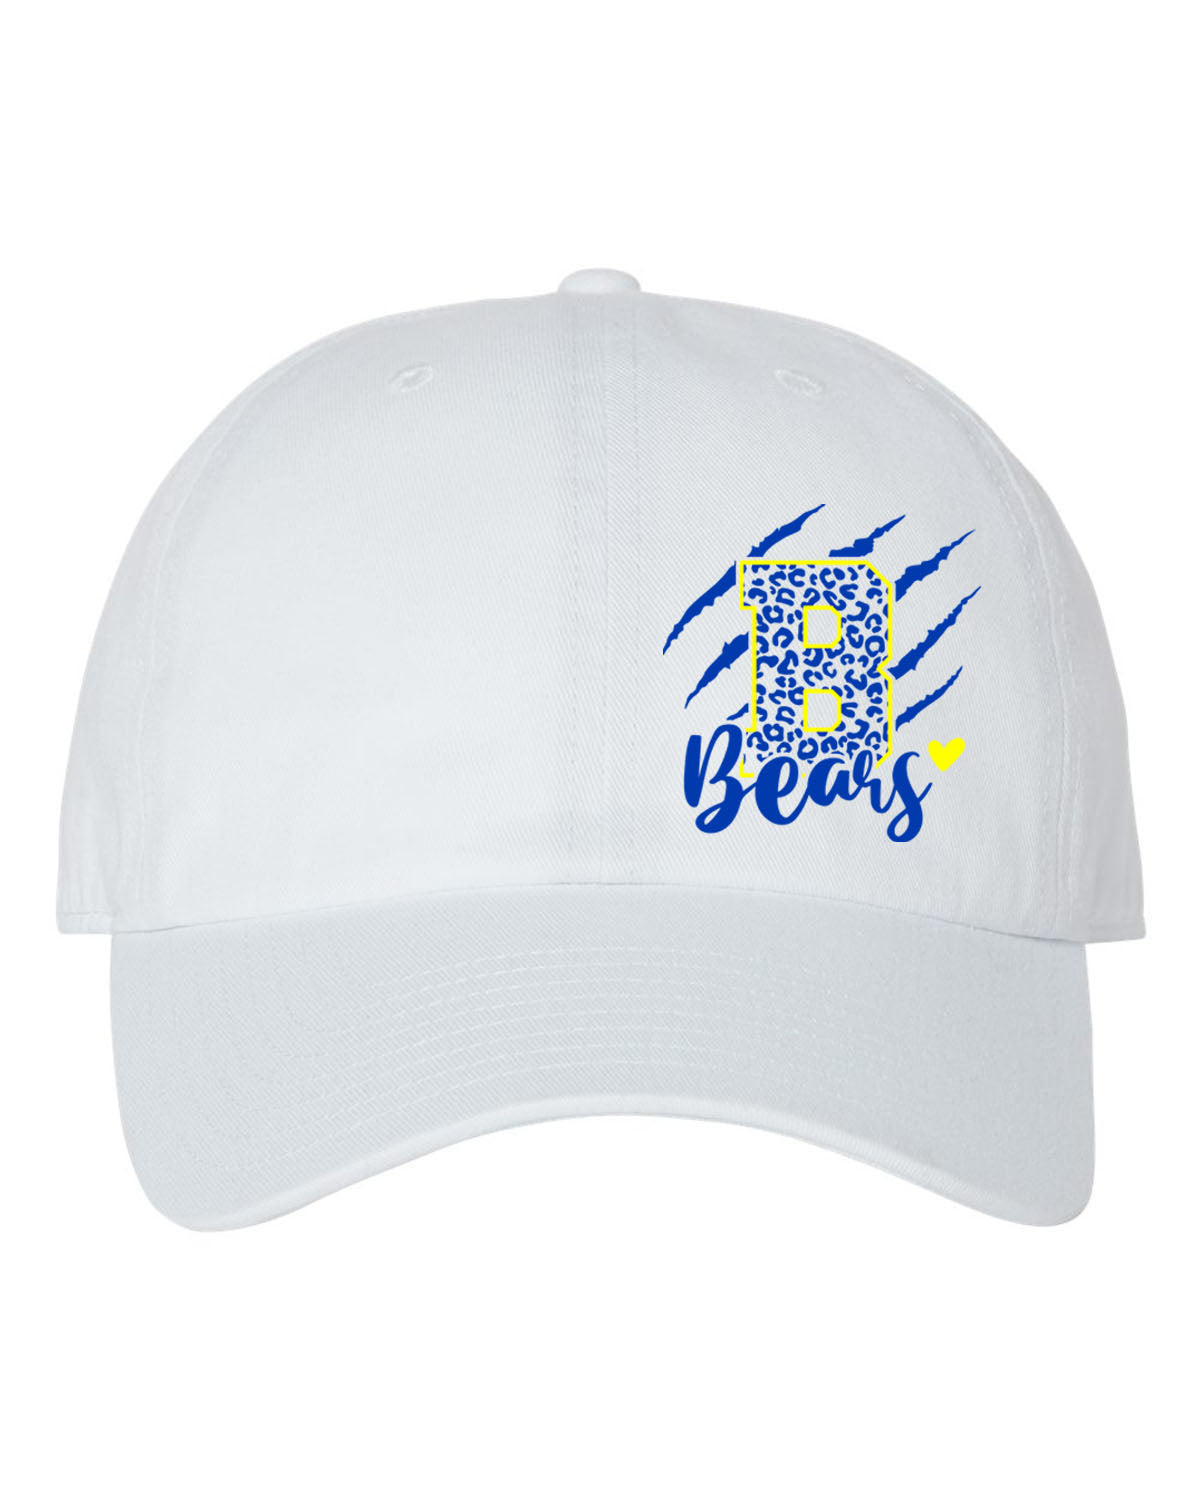 Blairstown Bears Design 11 Trucker Hat